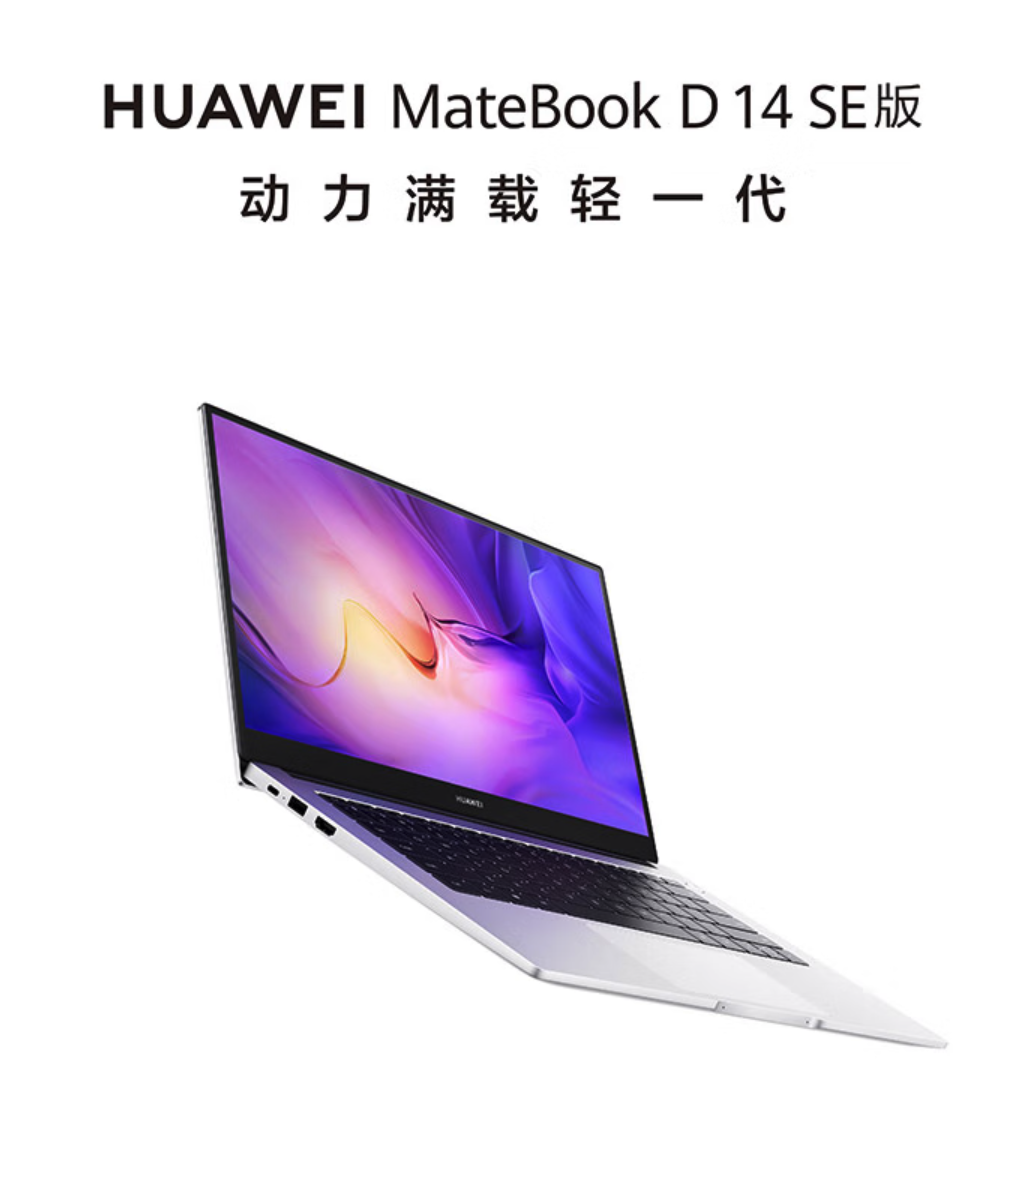 Huawei MateBook D14 SE